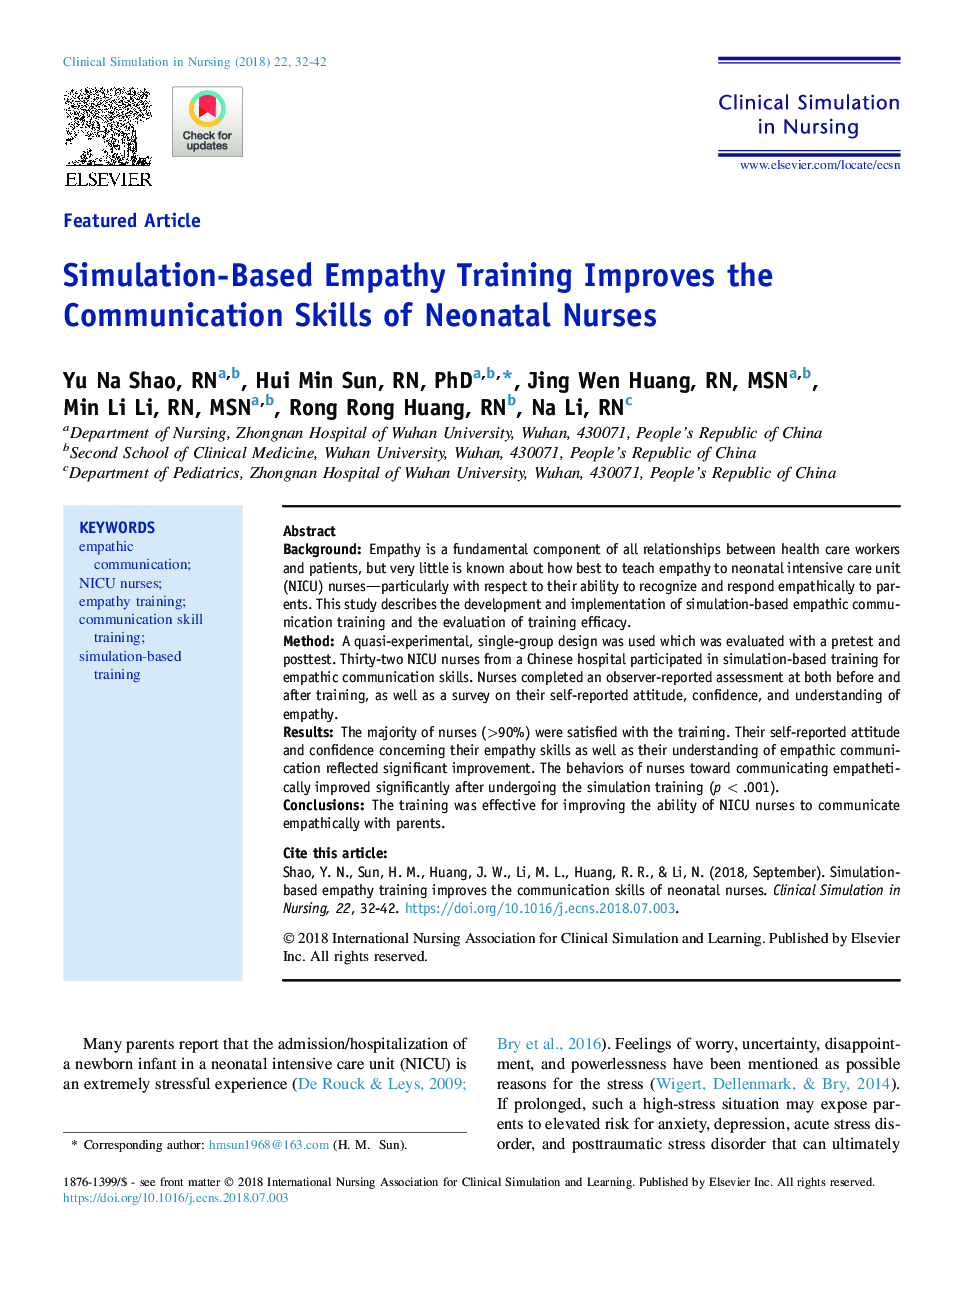 آموزش همدلی مبتنی بر شبیه سازی مهارت های ارتباطی پرستاران نوزاد را بهبود می بخشد 